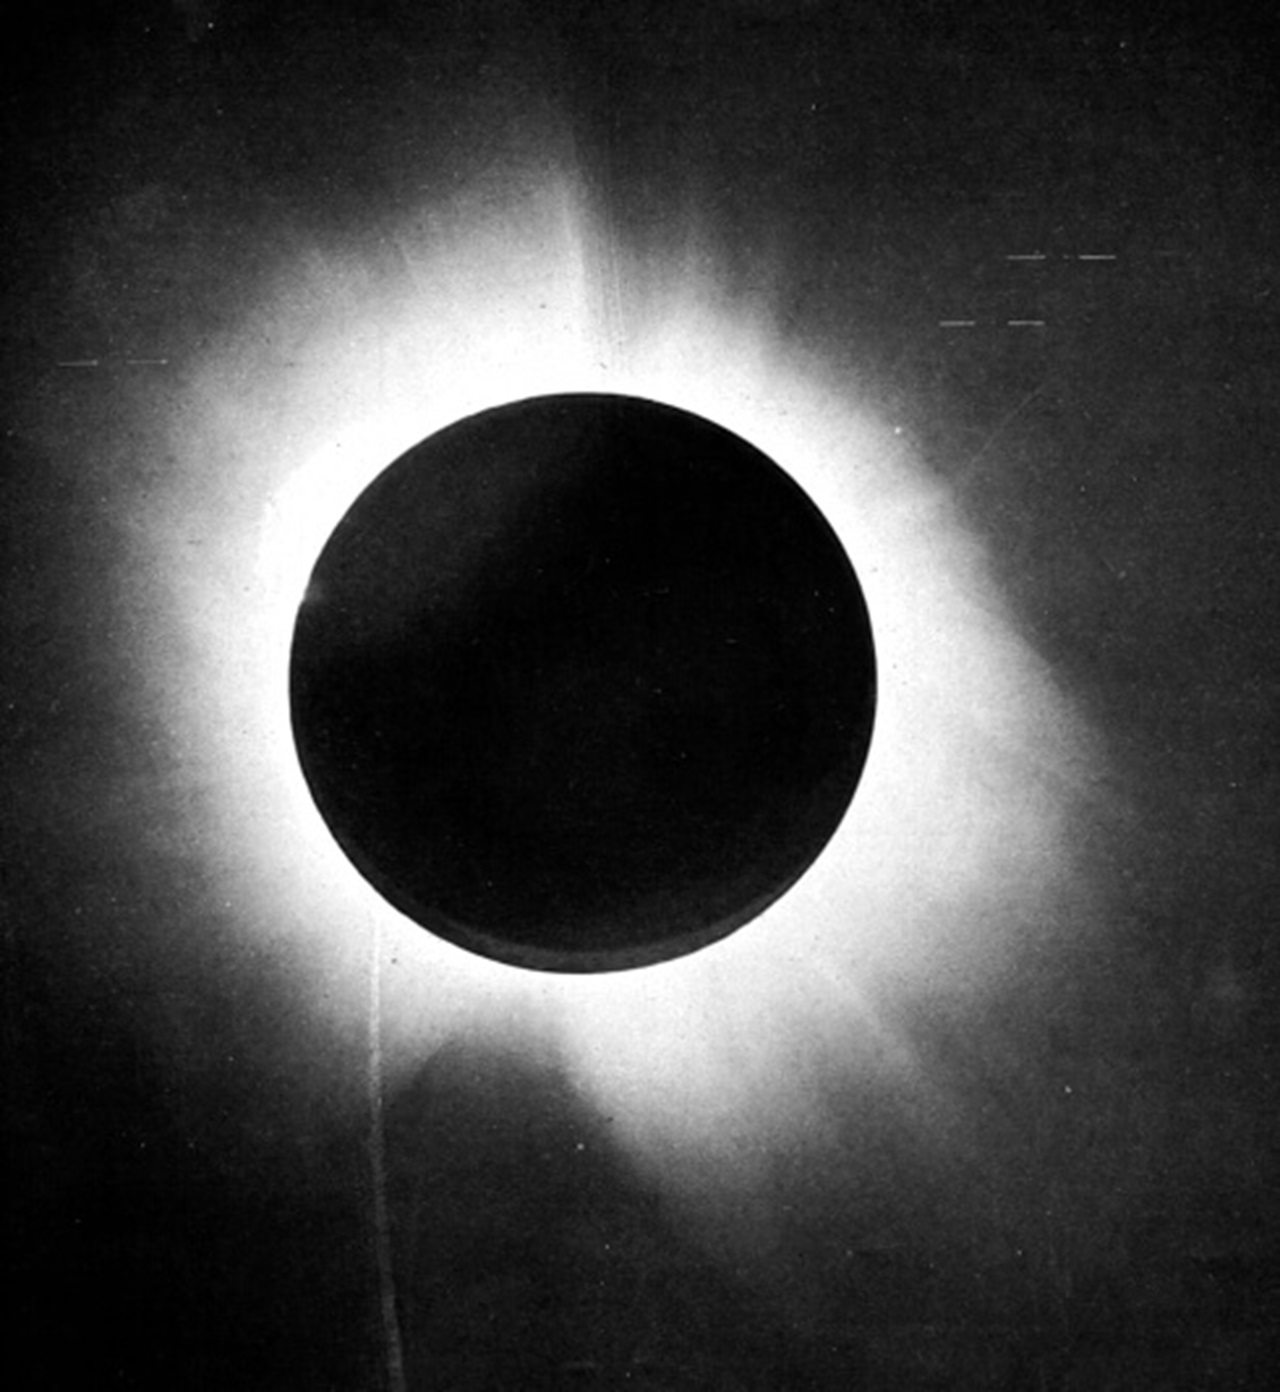 O eclipse como uma oportunidade para testar a teoria de Einstein